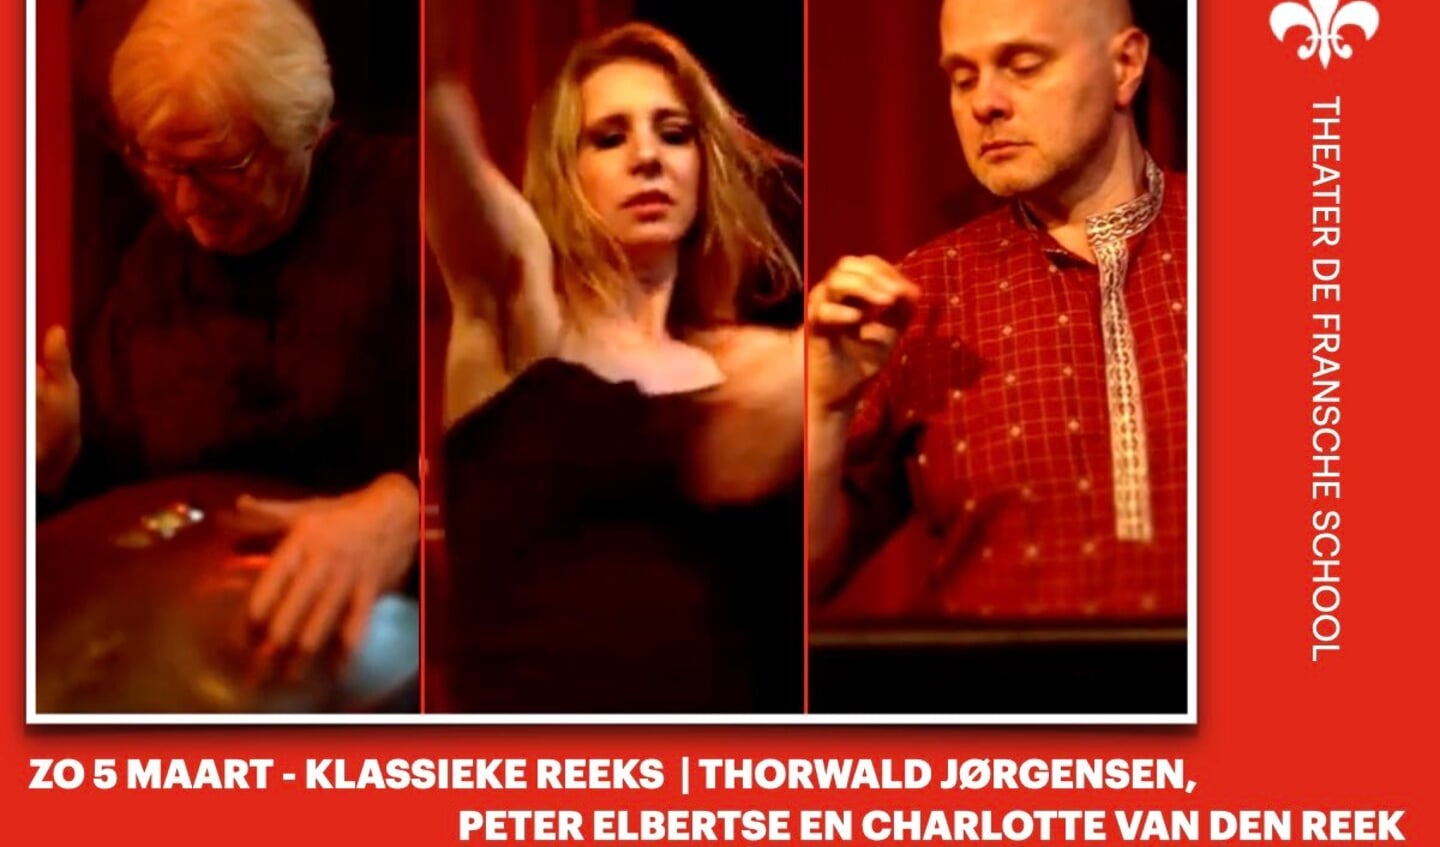 Klassieke Reeks - Thorwald Jørgensen, Peter Elbertse, Charlotte van den Reek